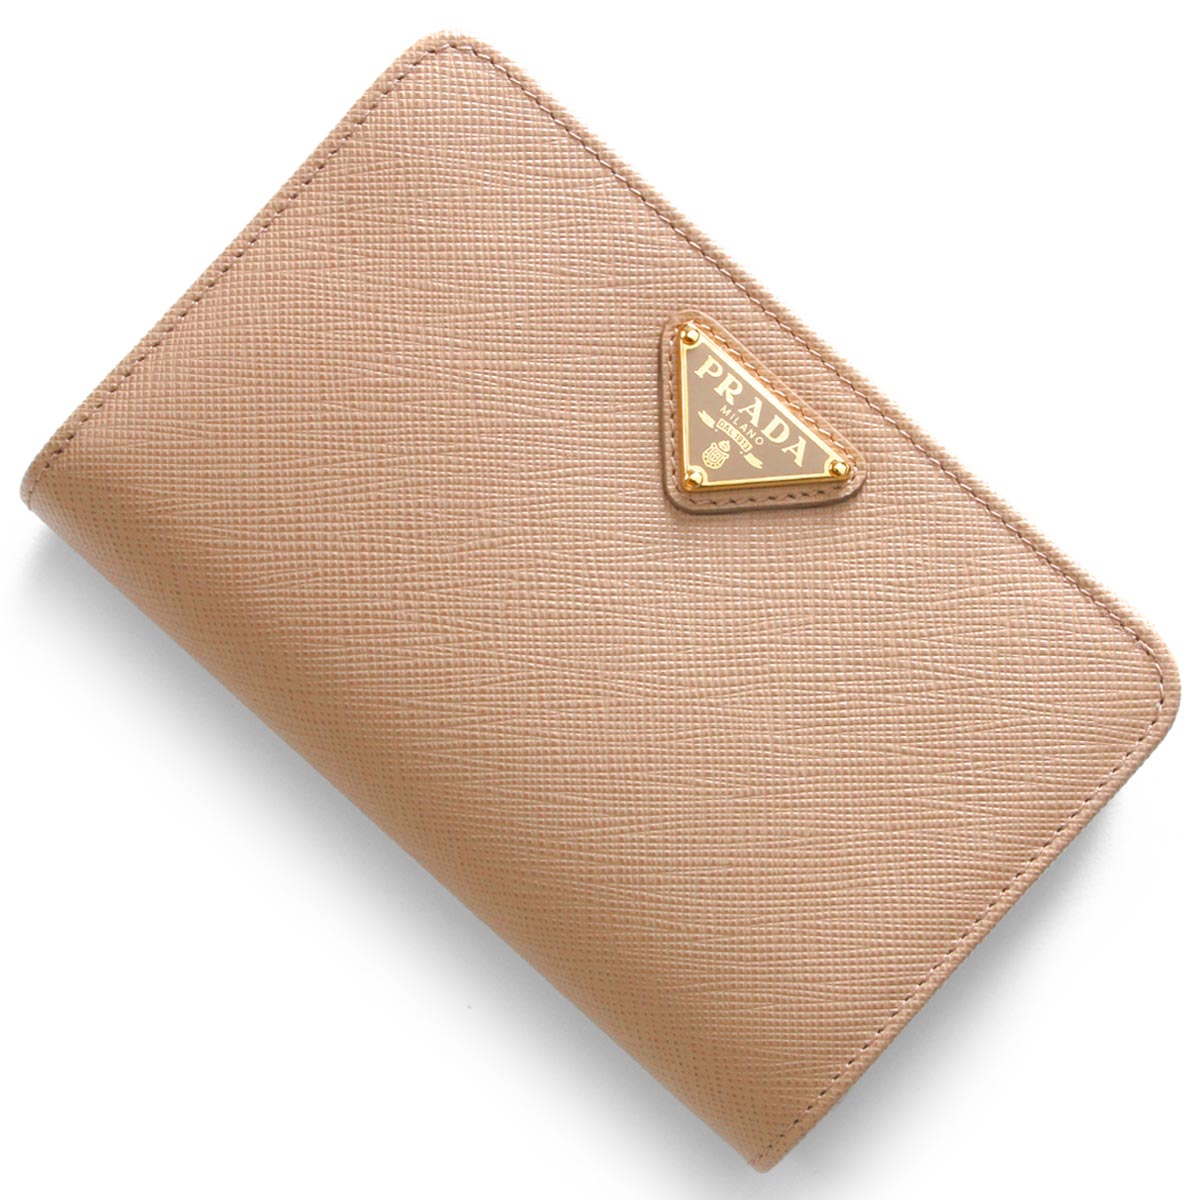 プラダ サフィアーノ レザー 三角ロゴ 二つ折り 財布 コンパクト ウォレット ピンク かわいい 定番 ファスナー レディース MJT 1101-J2